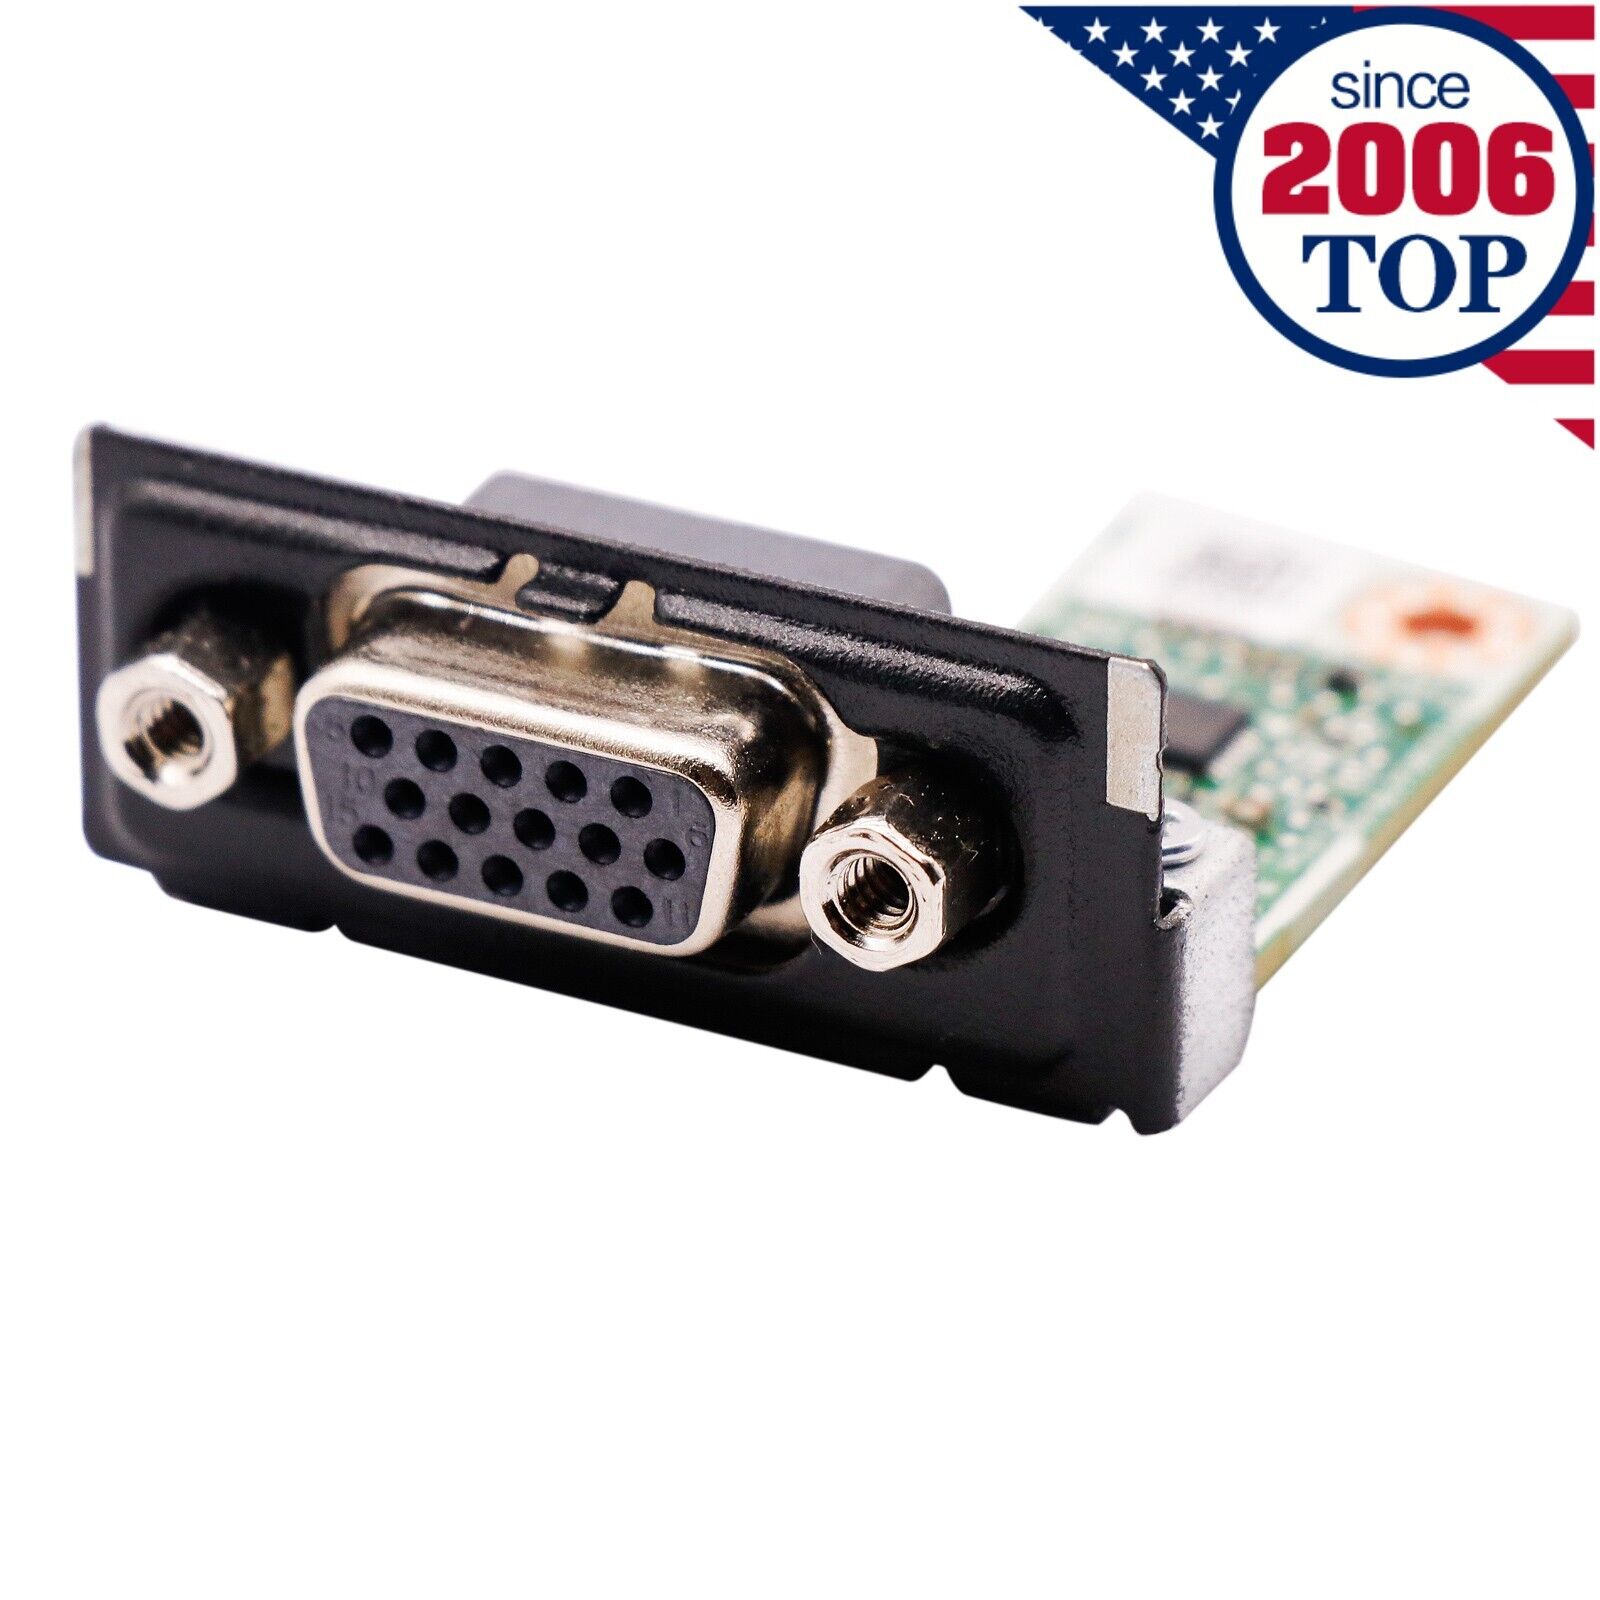 NEW VGA Flex IO Board Card for HP 400 600 800 G3 G4 G5 SFF MT DM MINI 914970-002